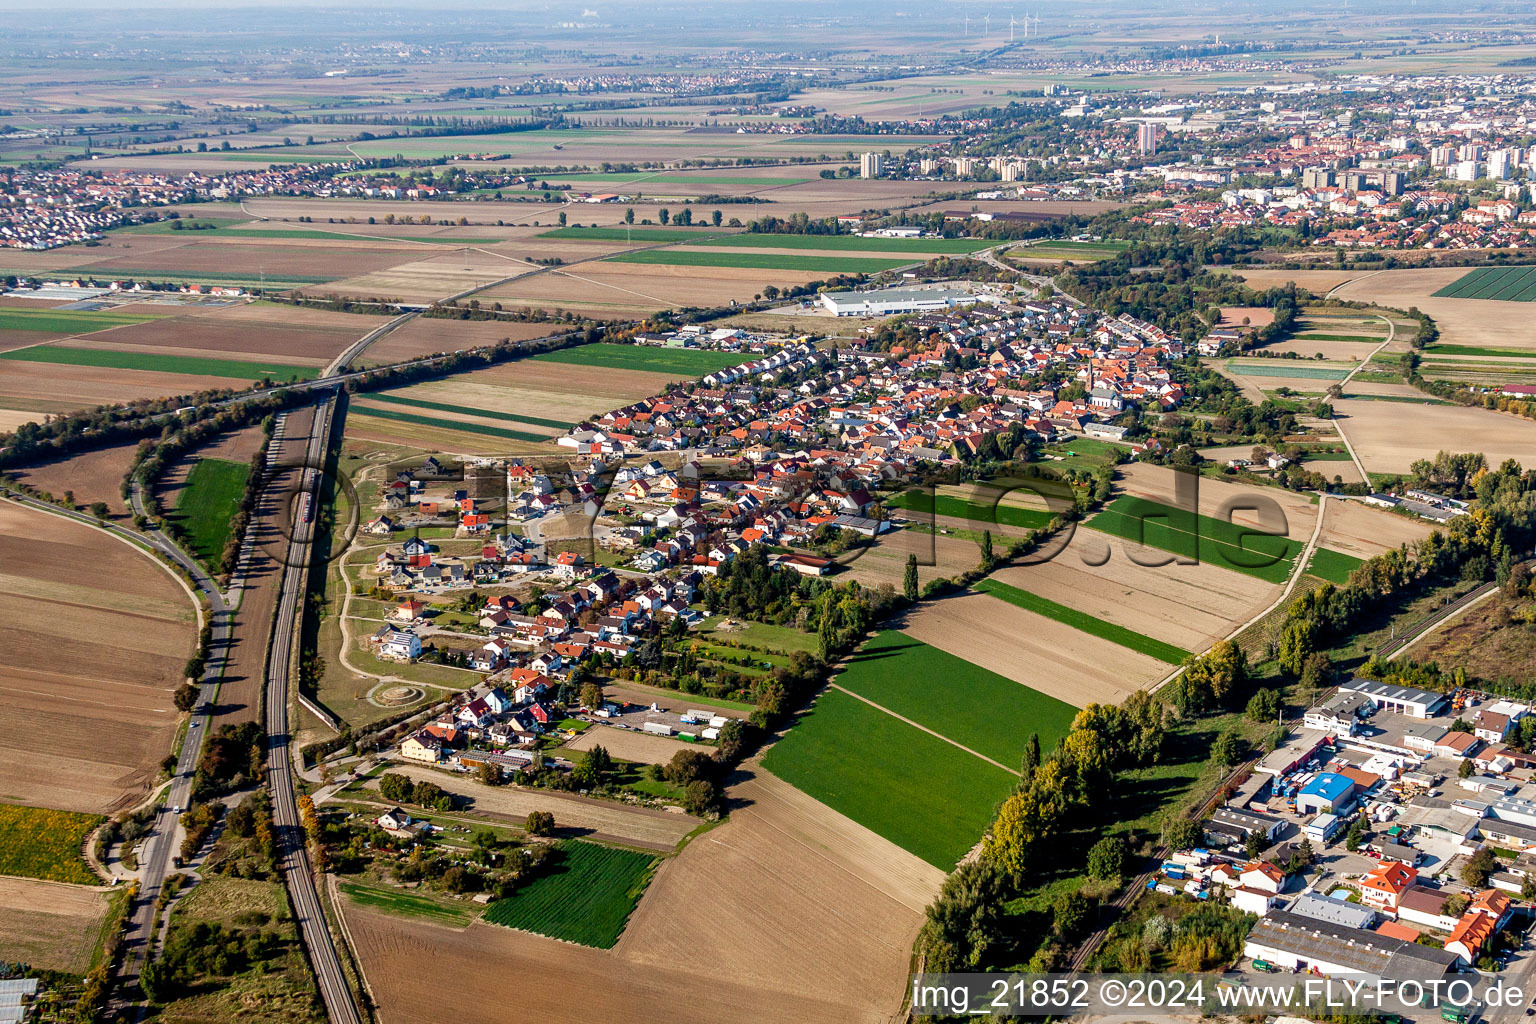 Luftbild von Dorf - Ansicht am Rande von landwirtschaftlichen Feldern und Nutzflächen in Studernheim in Frankenthal im Bundesland Rheinland-Pfalz, Deutschland